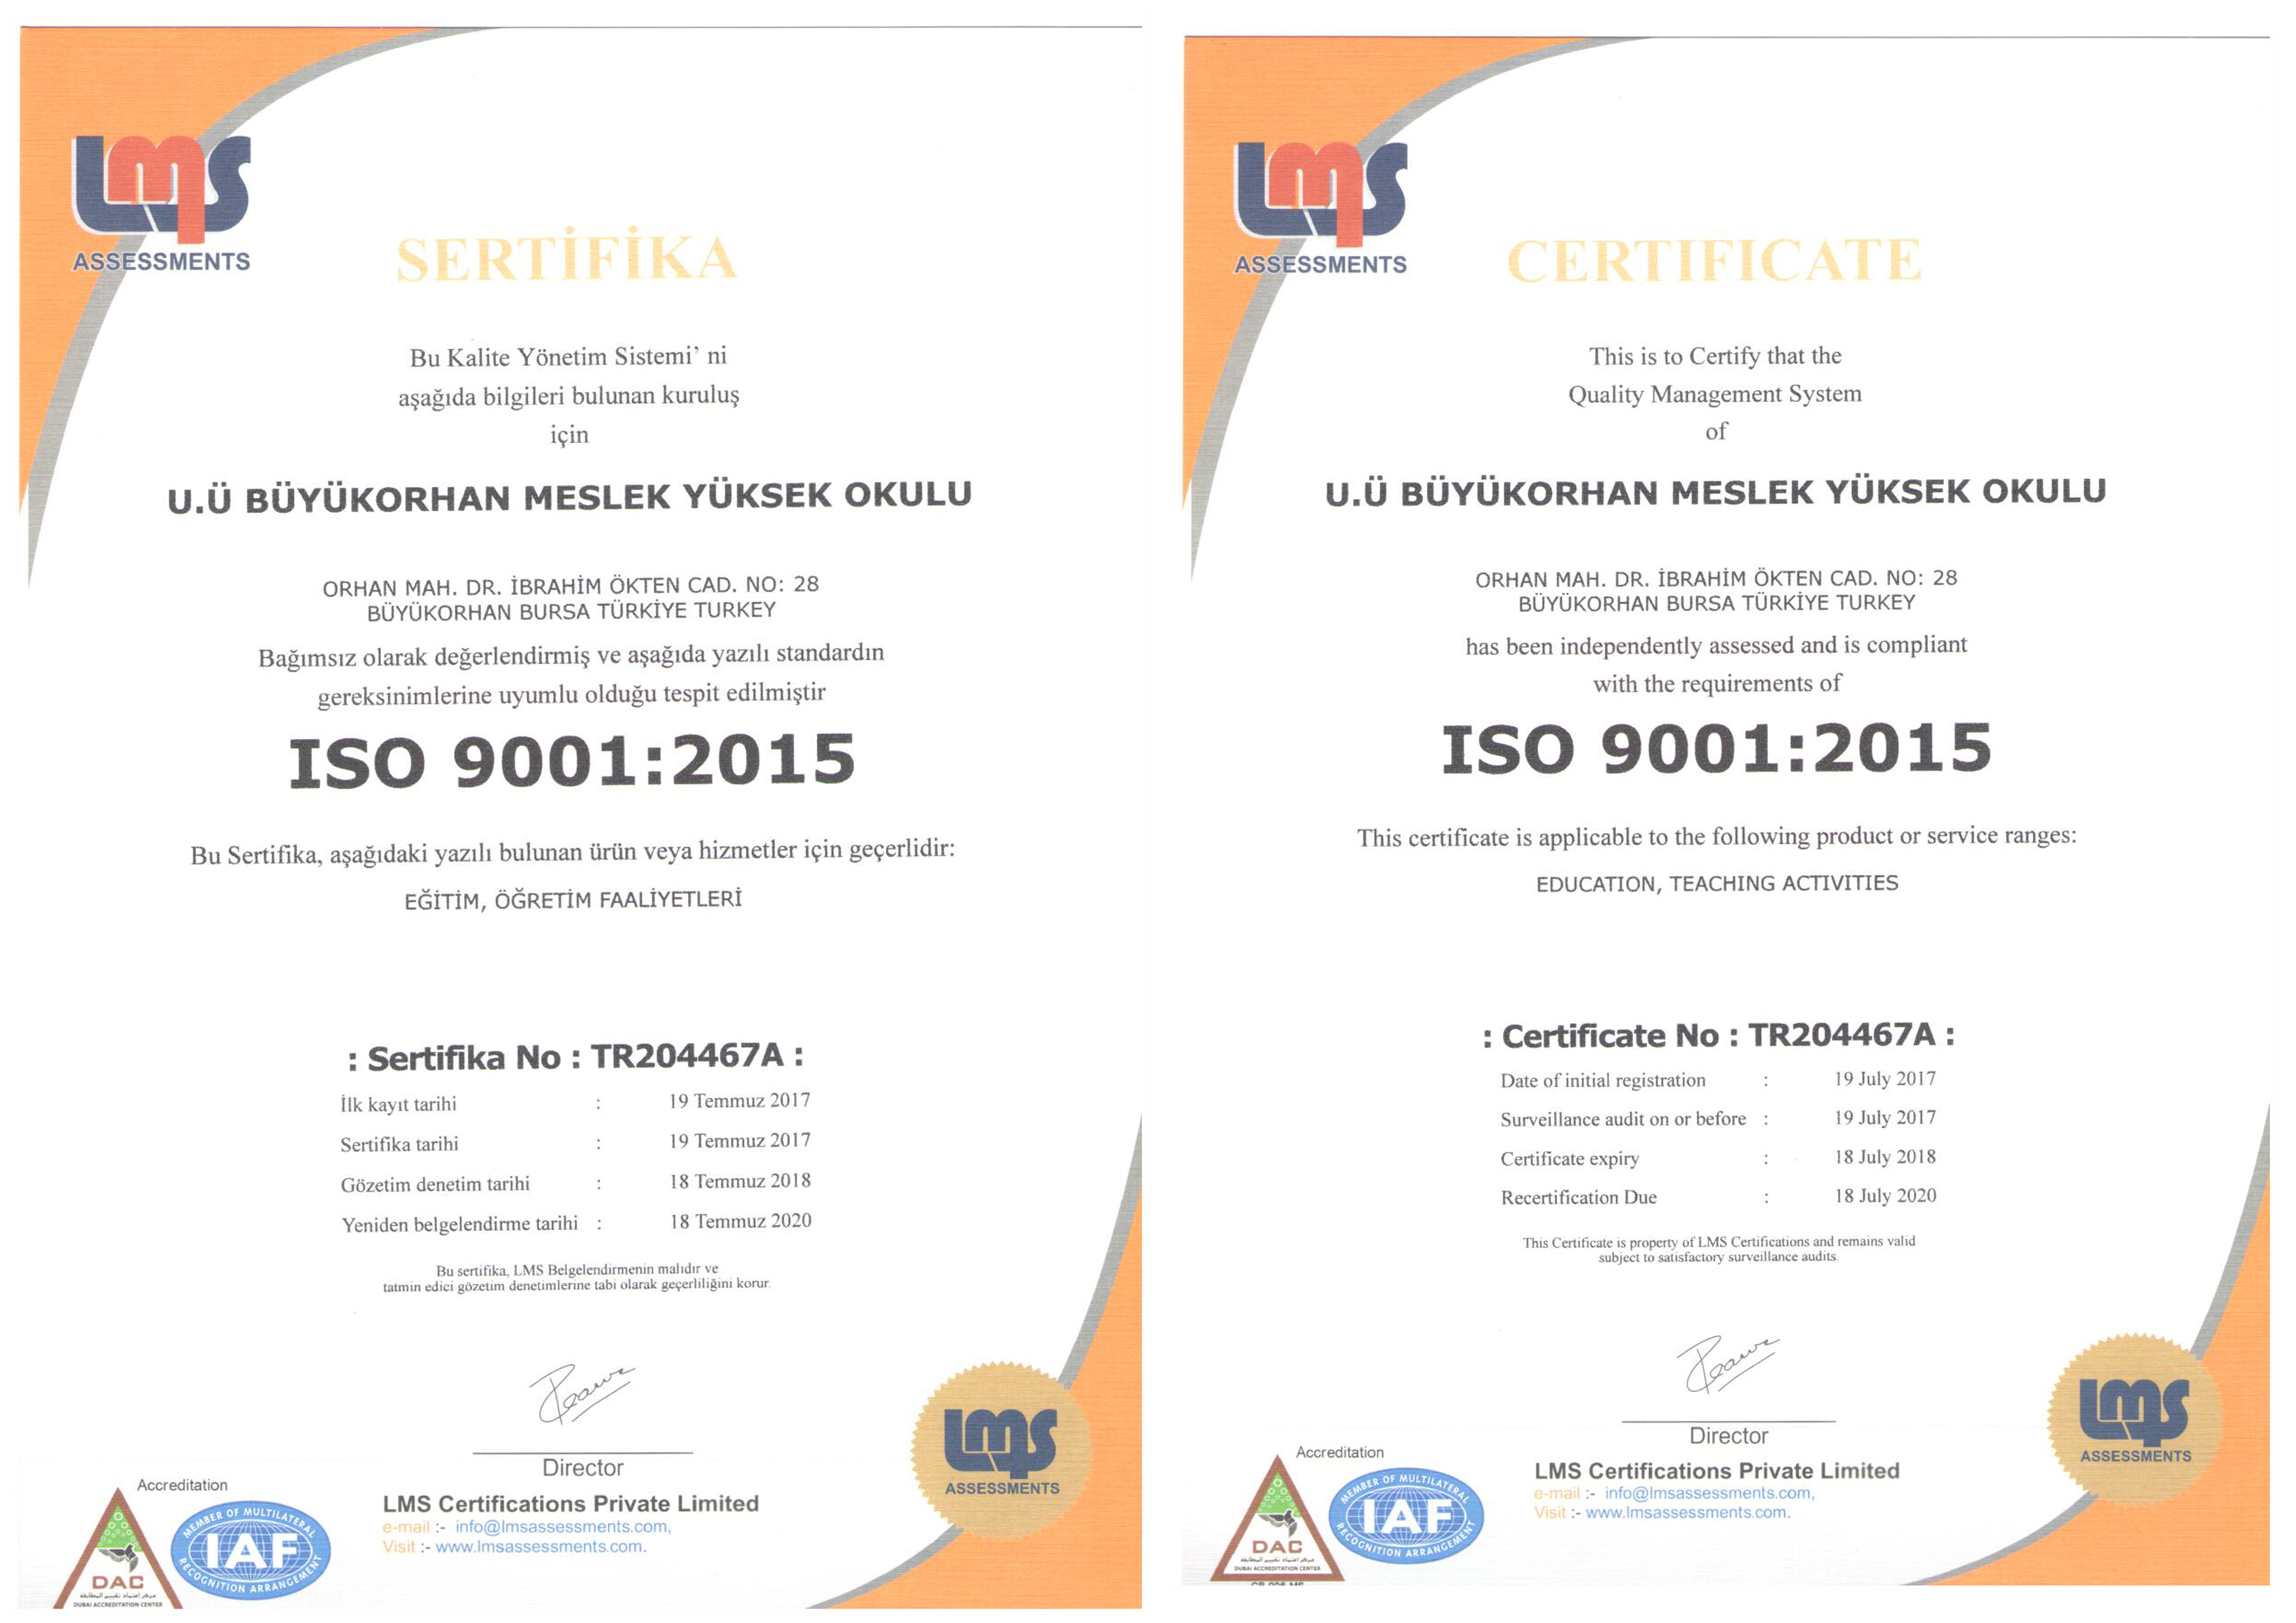  Büyükorhan Meslek Yüksekokulu ISO 9001: 2015 Kalite Yönetim Sistemi belgesi aldı. 